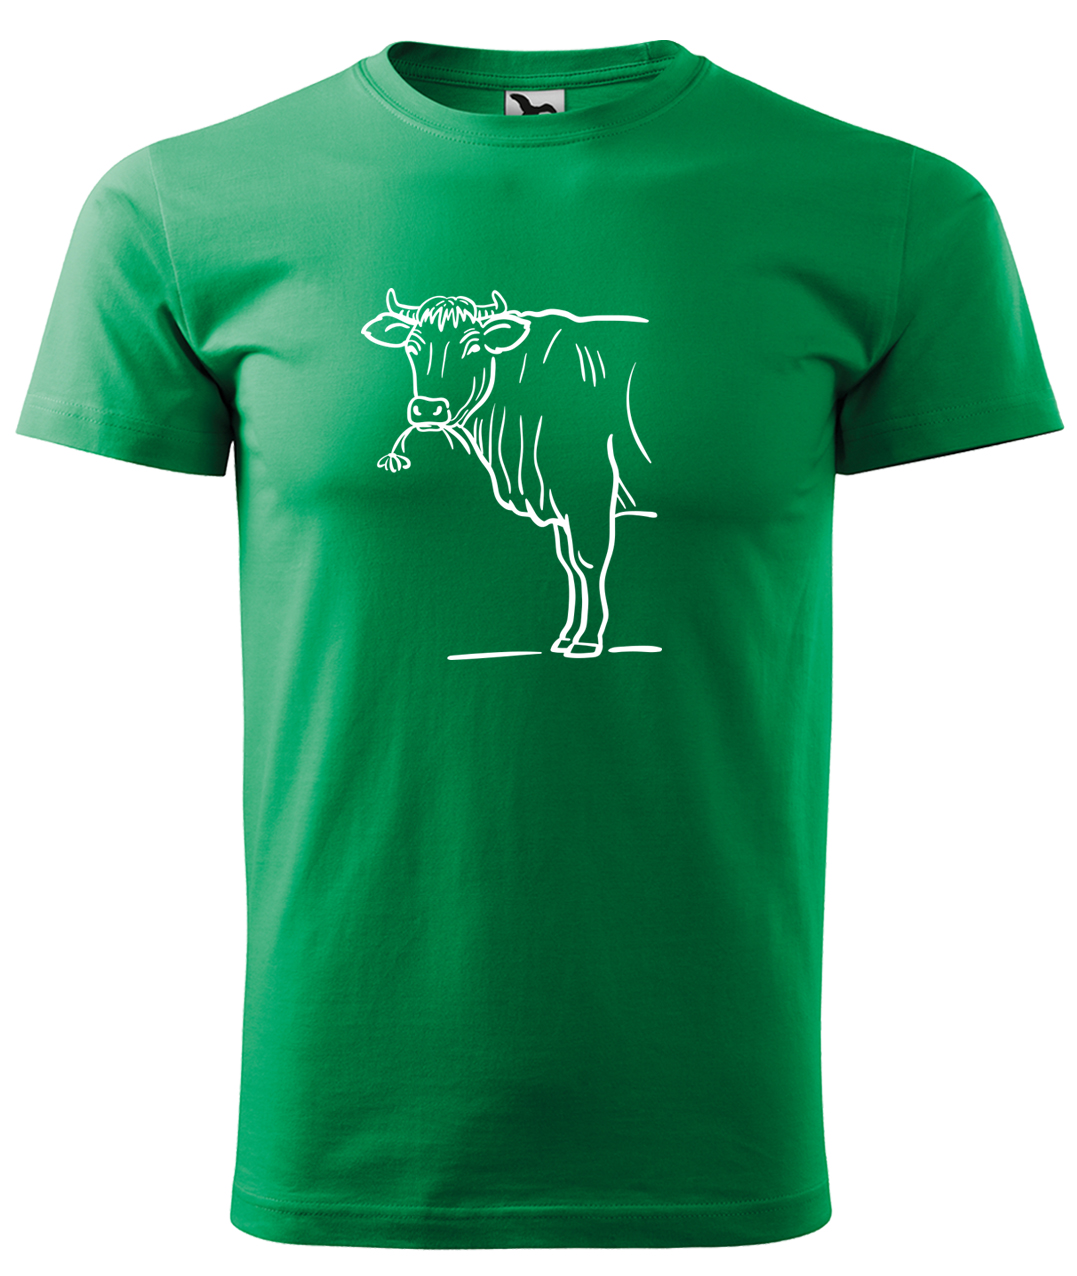 Dětské tričko s krávou - Býk Velikost: 10 let / 146 cm, Barva: Středně zelená (16), Délka rukávu: Krátký rukáv